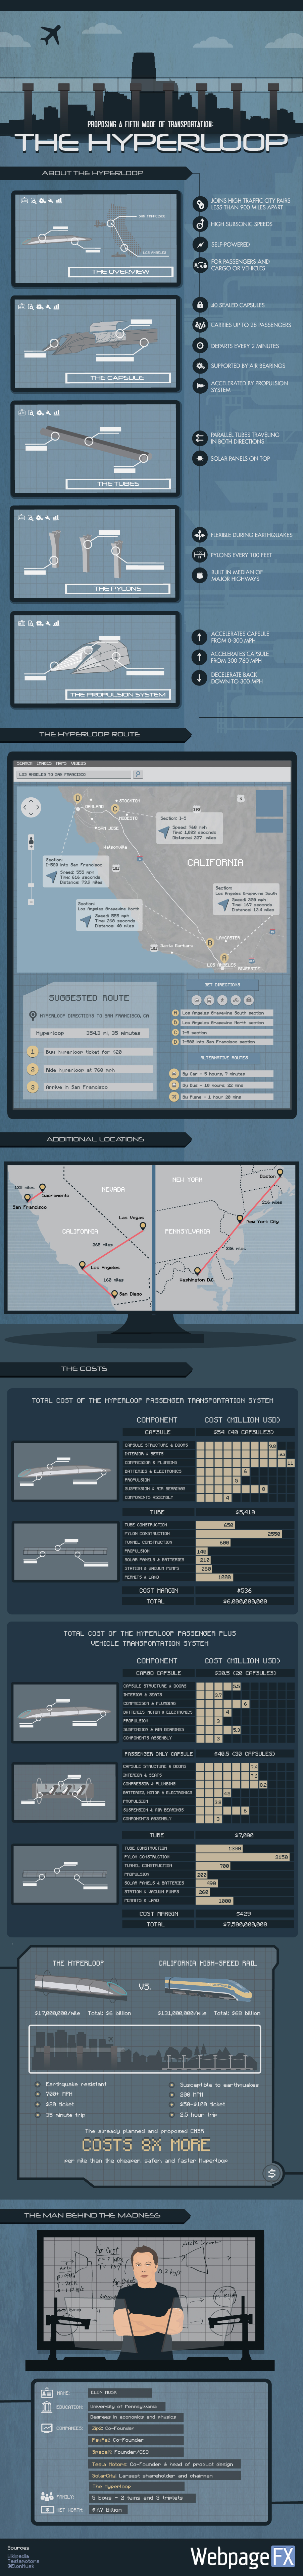 The-Hyperloop-Infographic